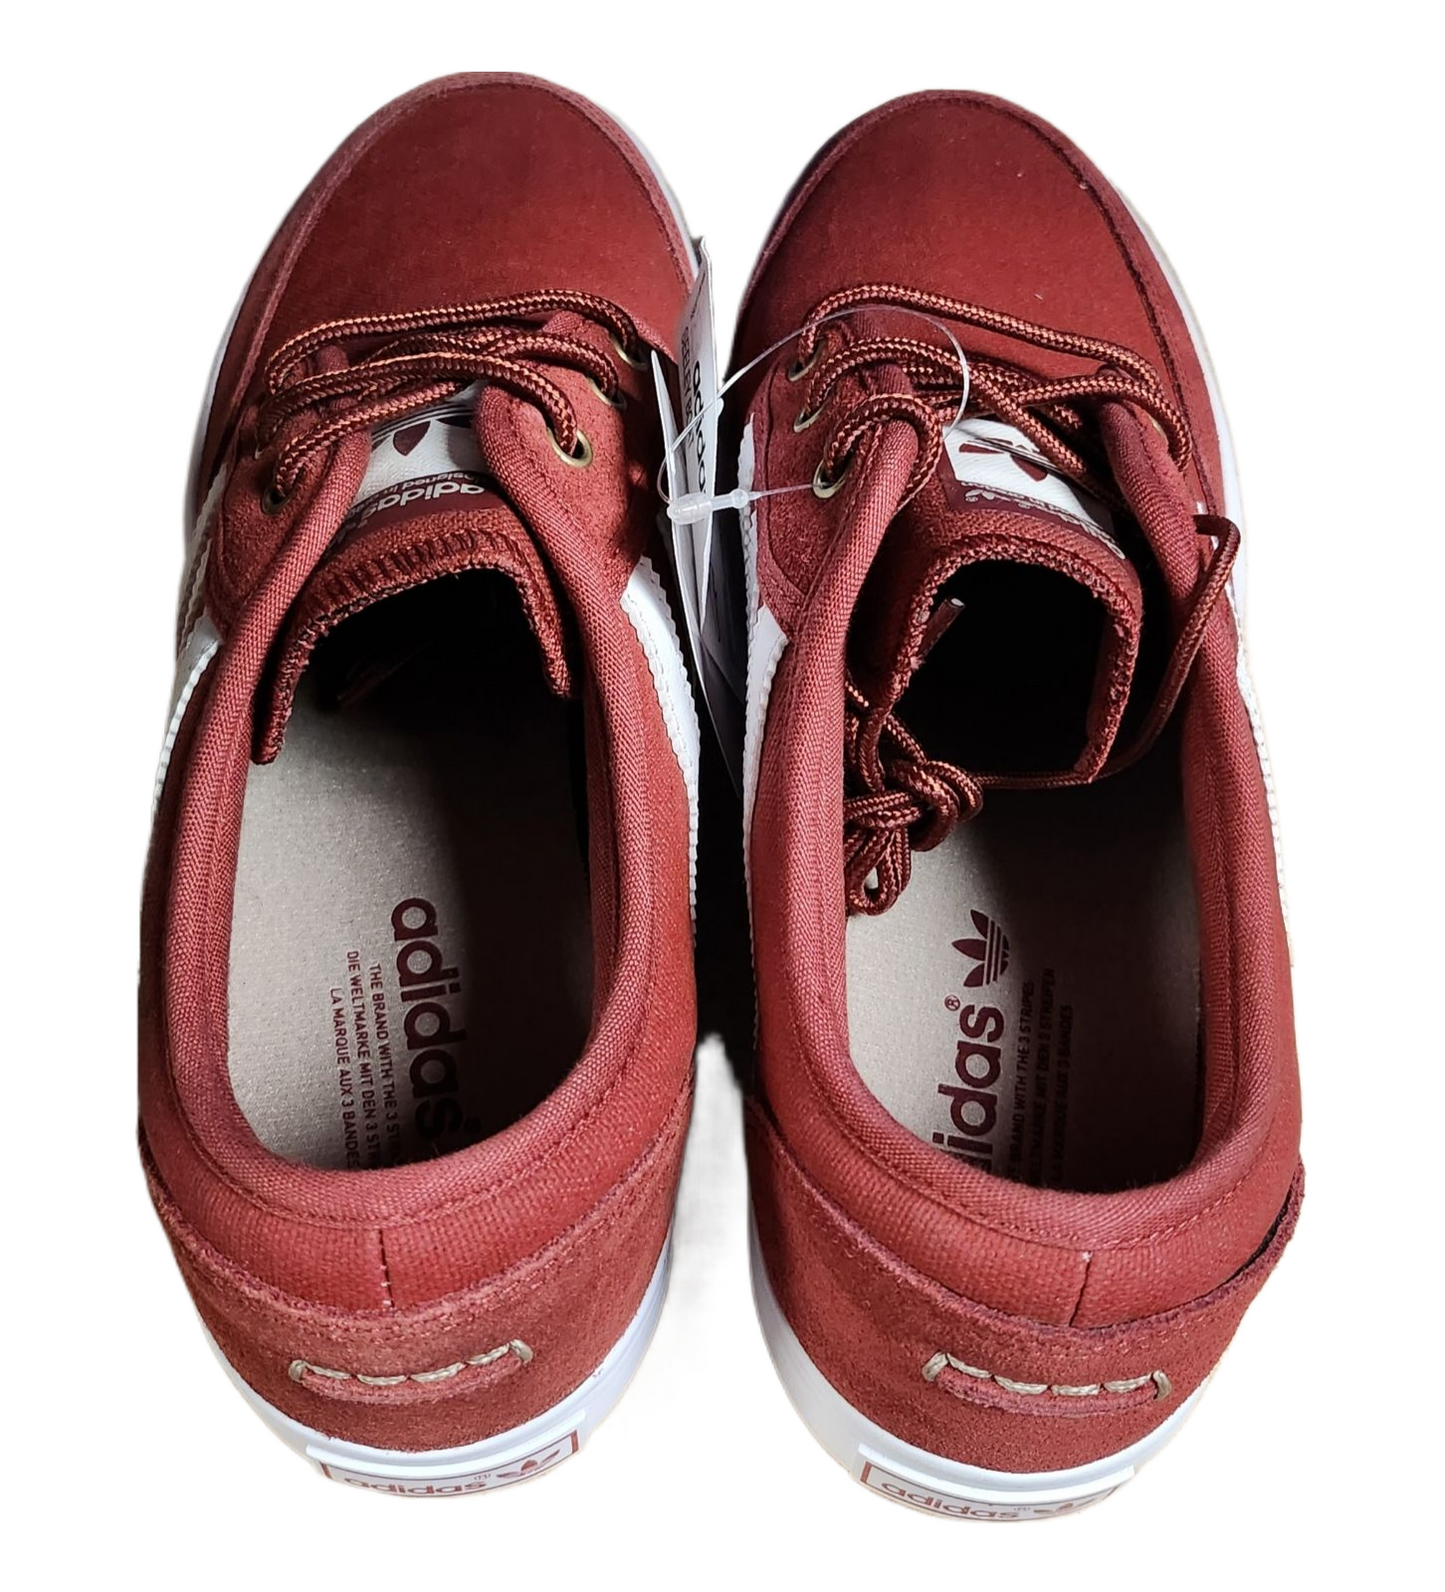 adidas Men Seeley Boat Skateboarding Shoe Red/White/Cargo Khaki G98079 Deadstock DEFECT